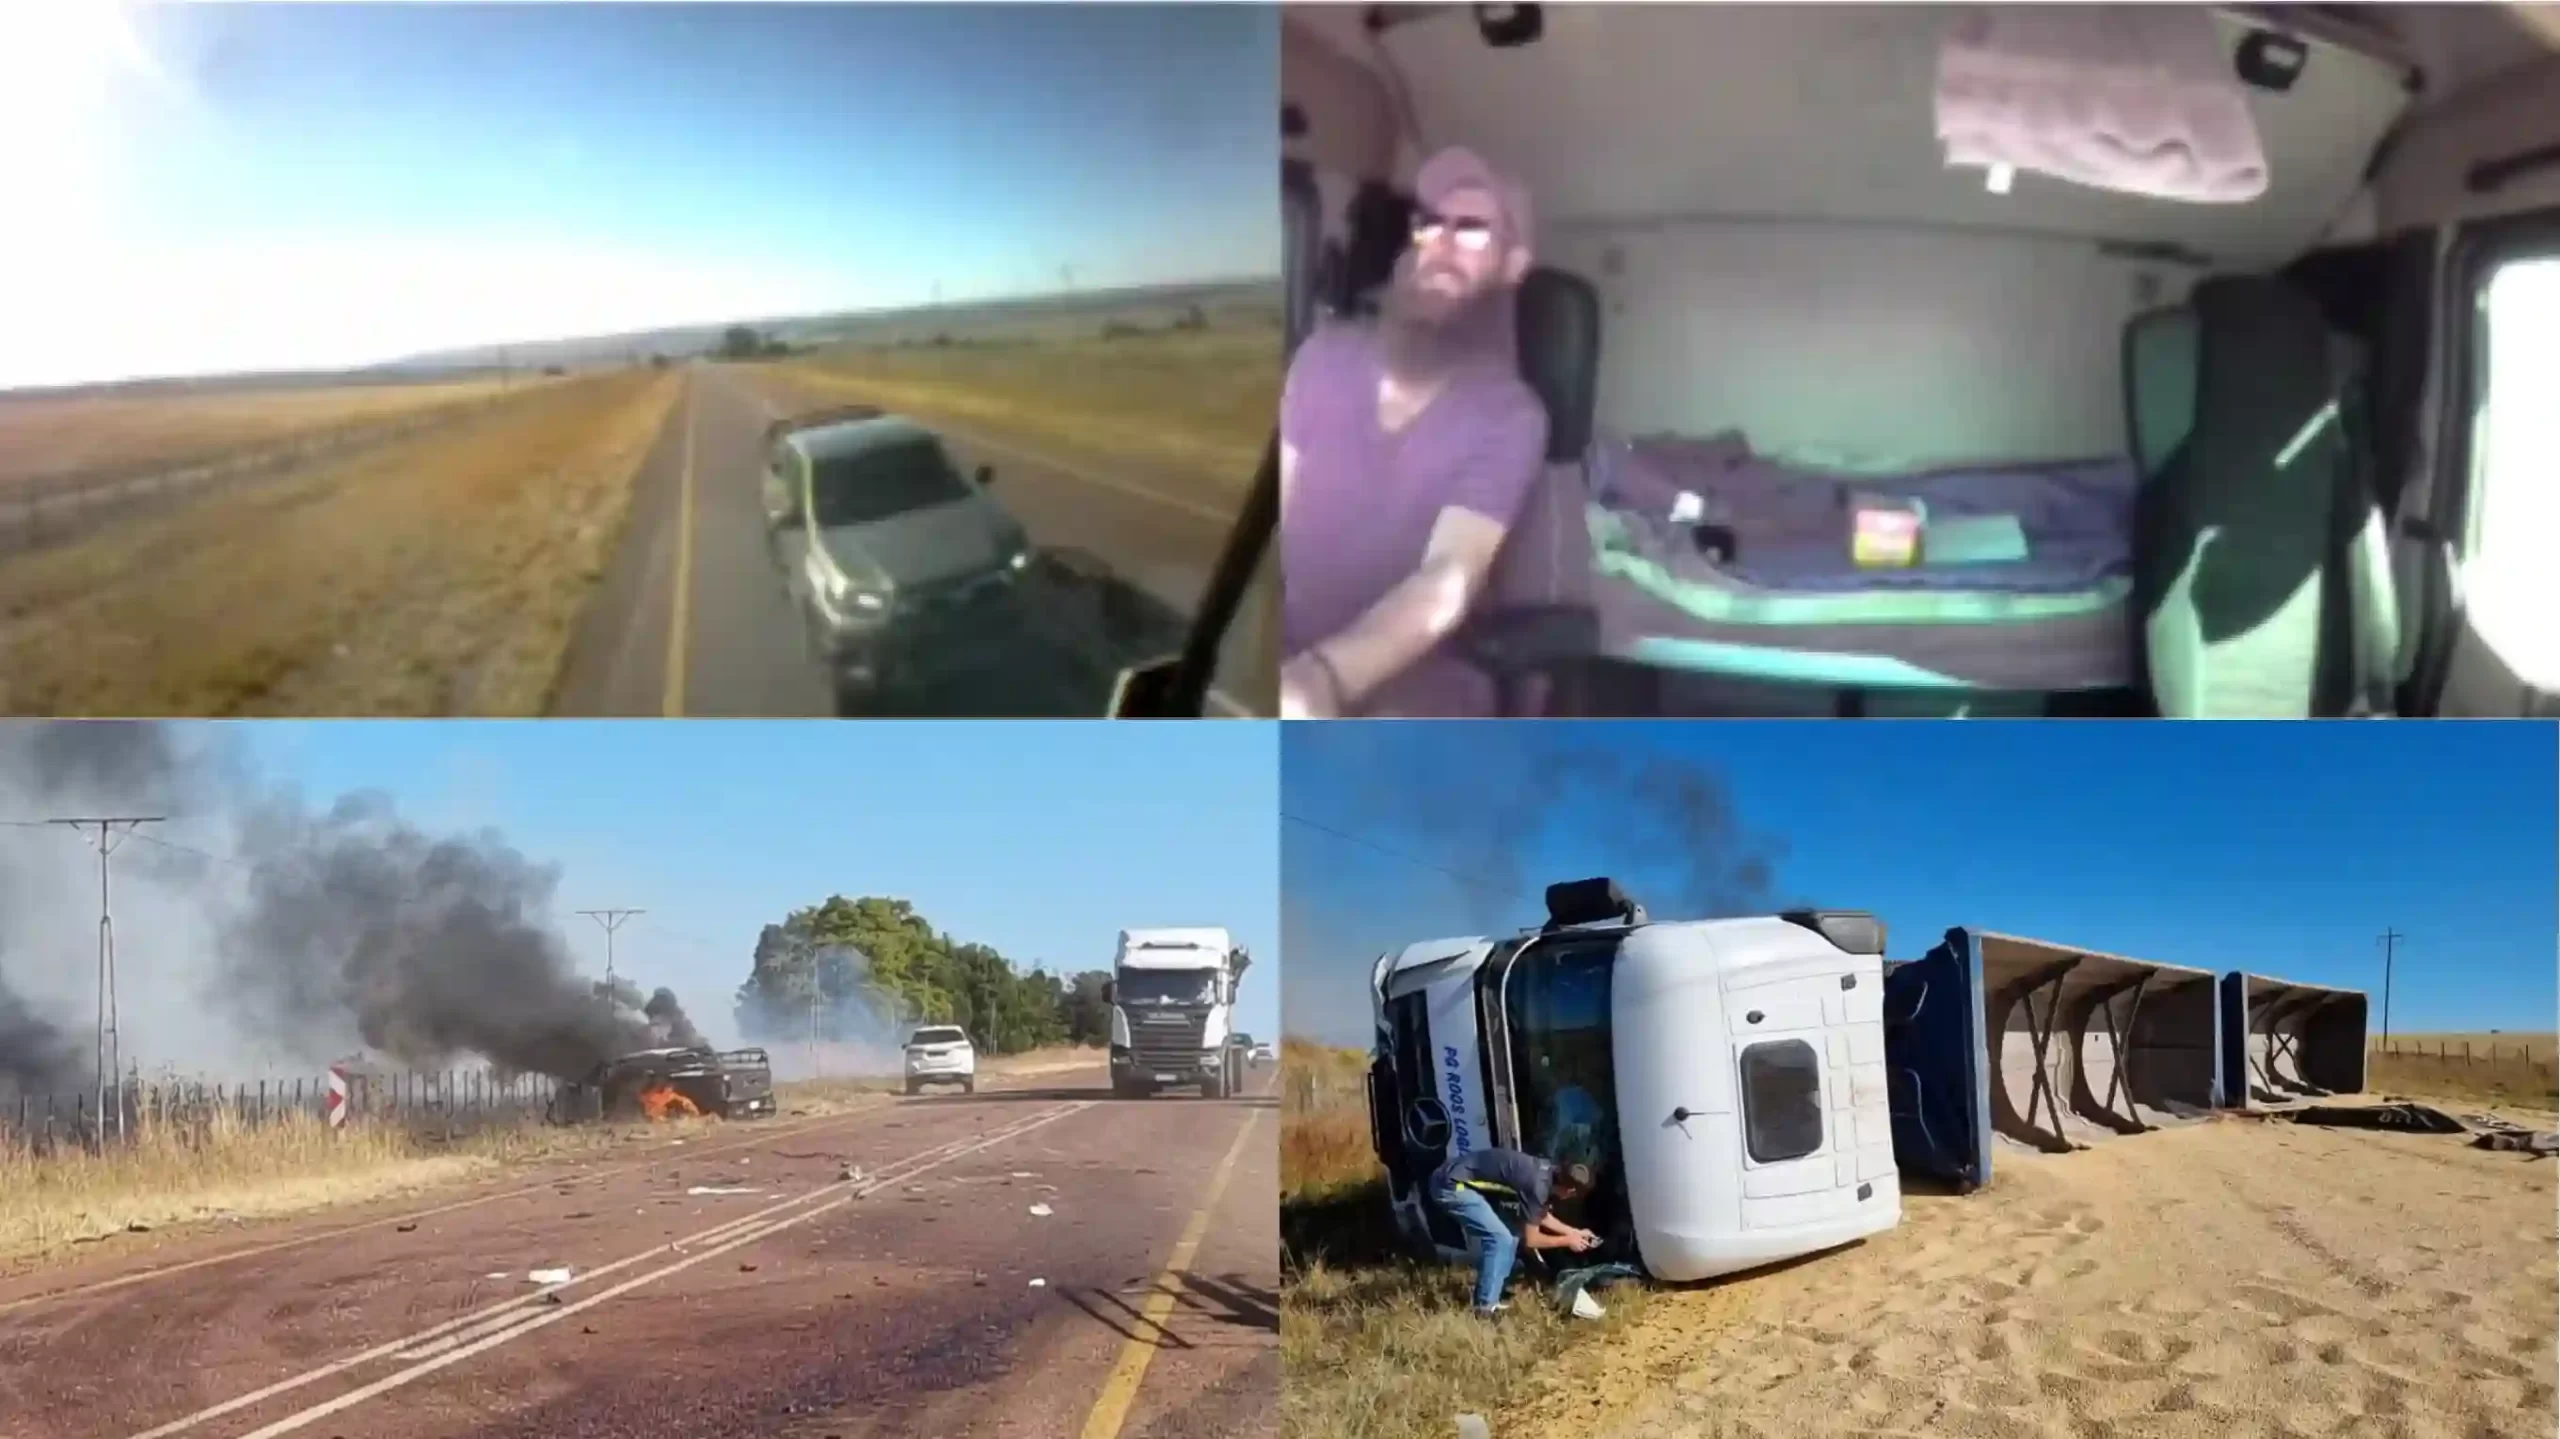 Details emerge of N11 crash captured in viral video